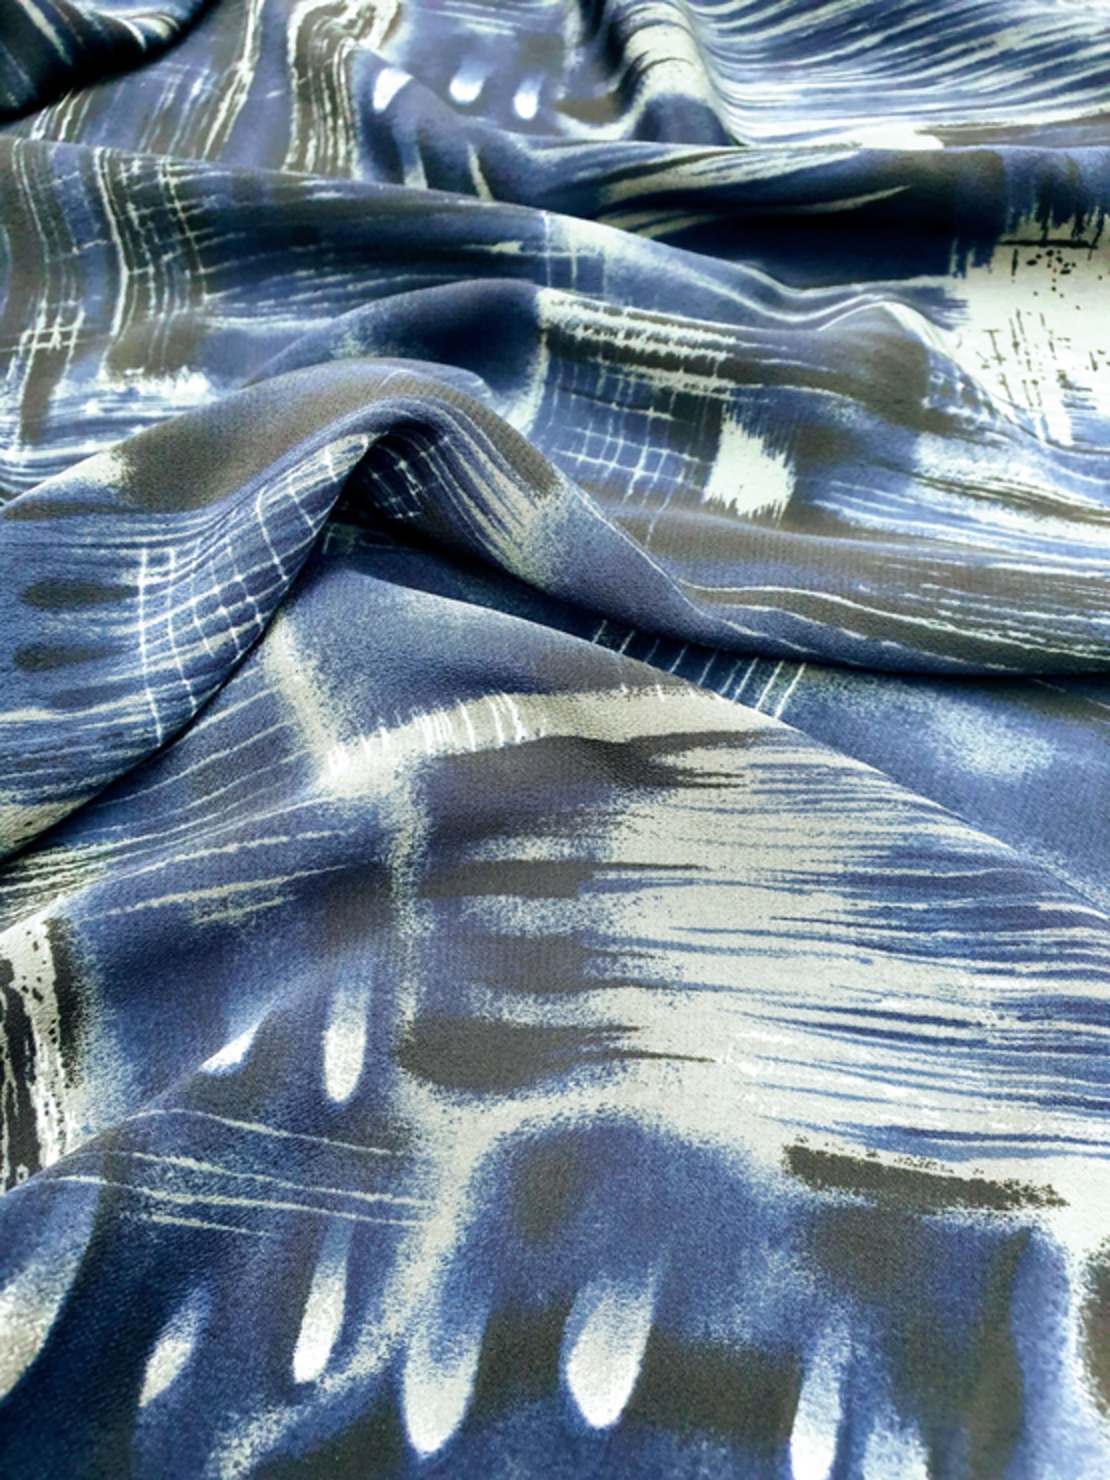 אריג פוליאסטר ויסקוזה כחול כהה דפוס אבסטרקטי 